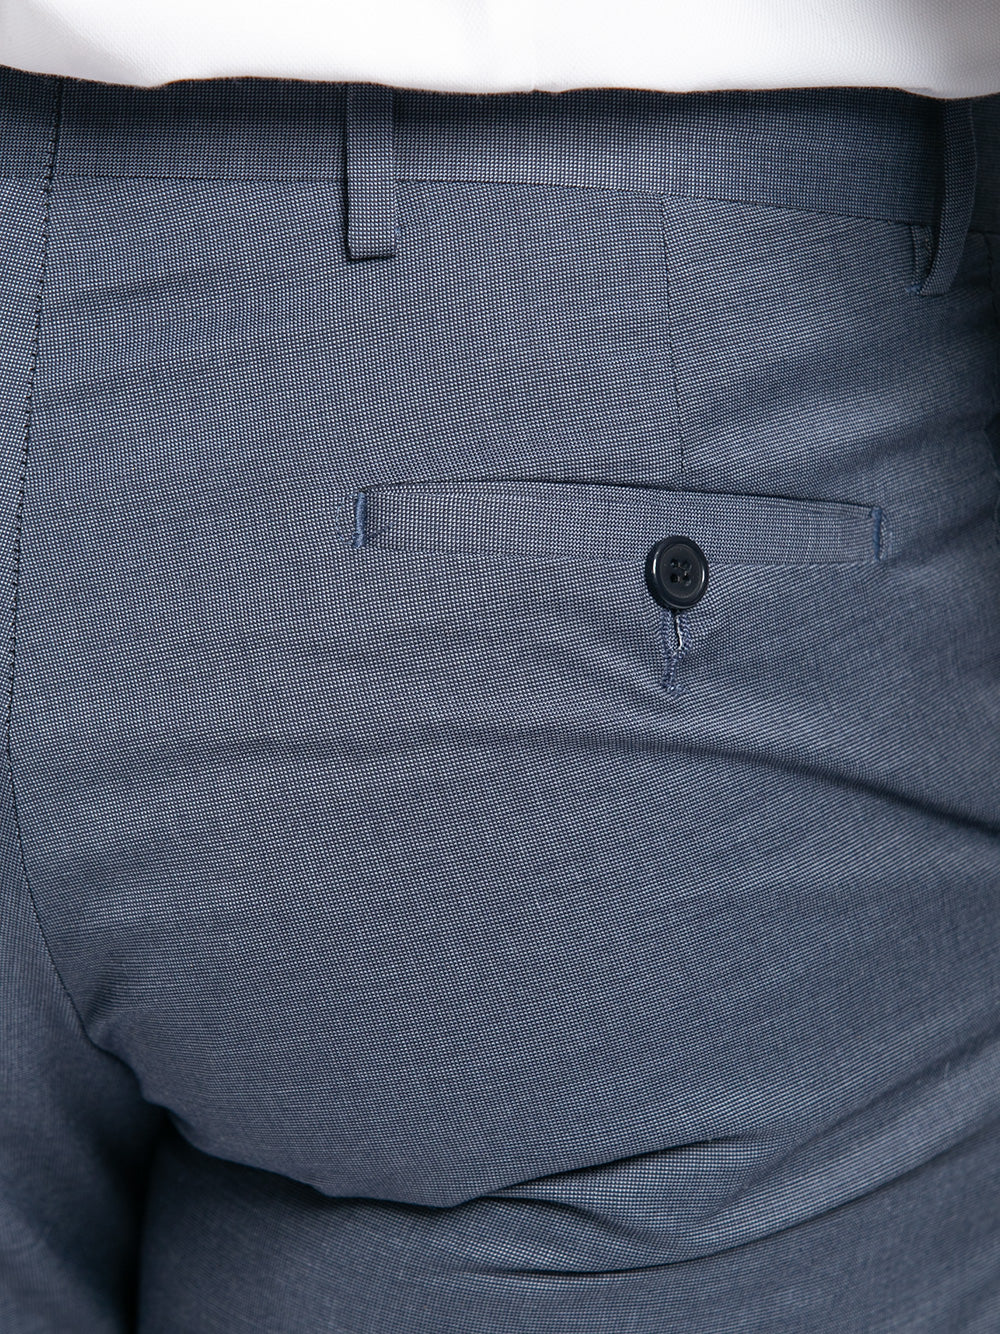 Pantalone taglio classico